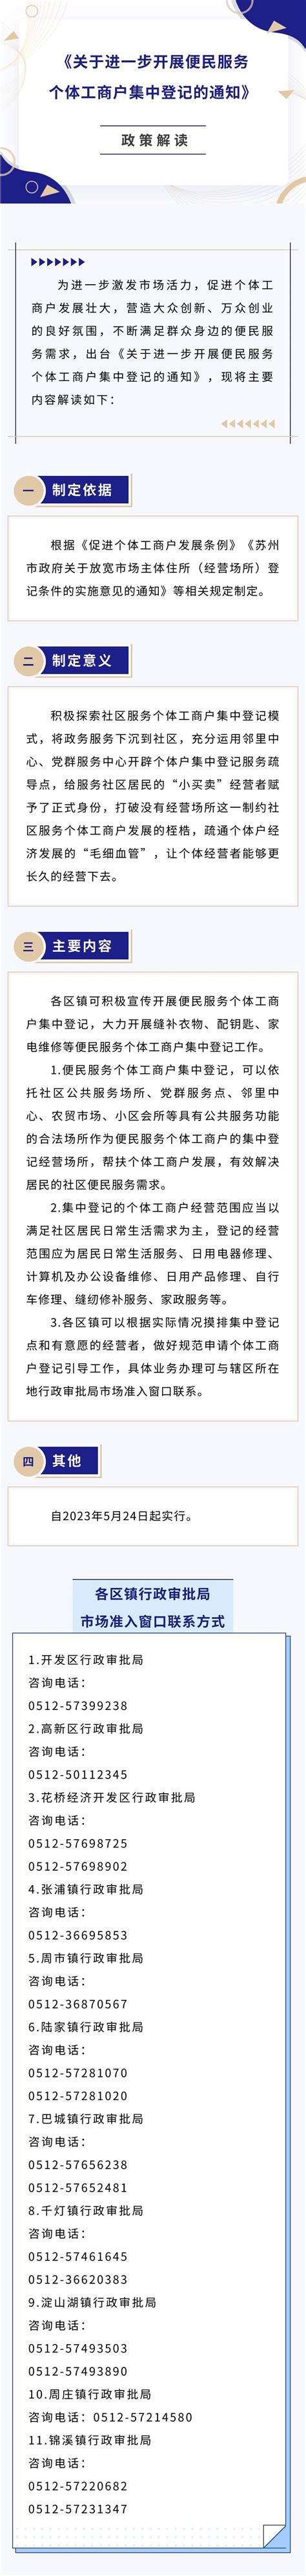 昆山台青获颁江苏首张台湾居民个体工商户营业执照-侨报网